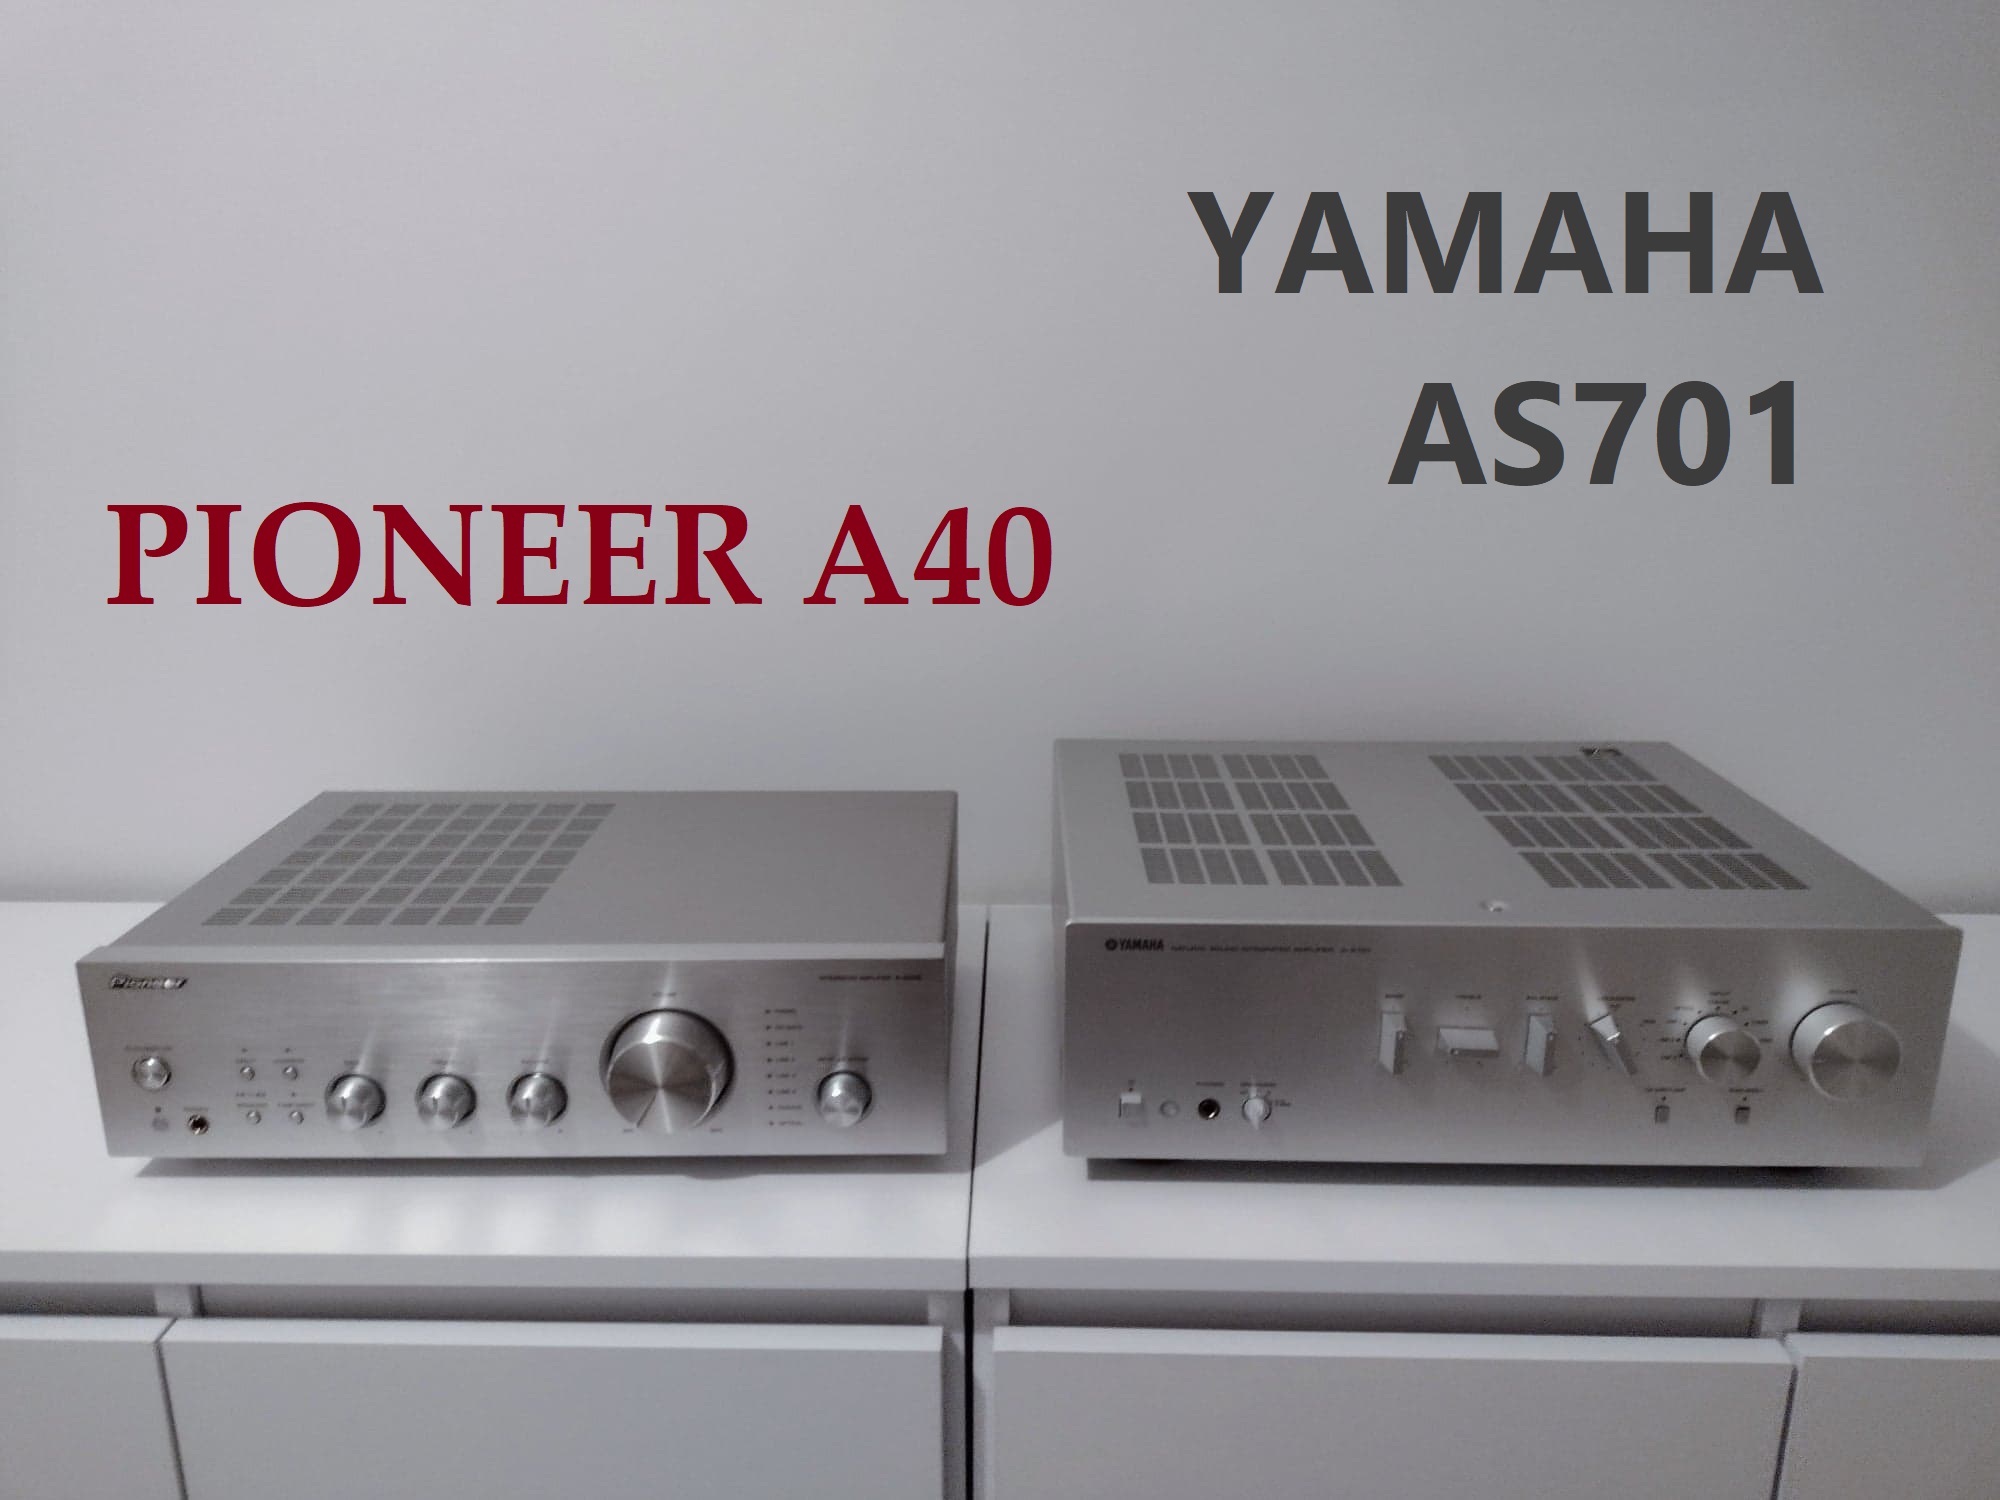 Yamaha 701 i Pioneer A40